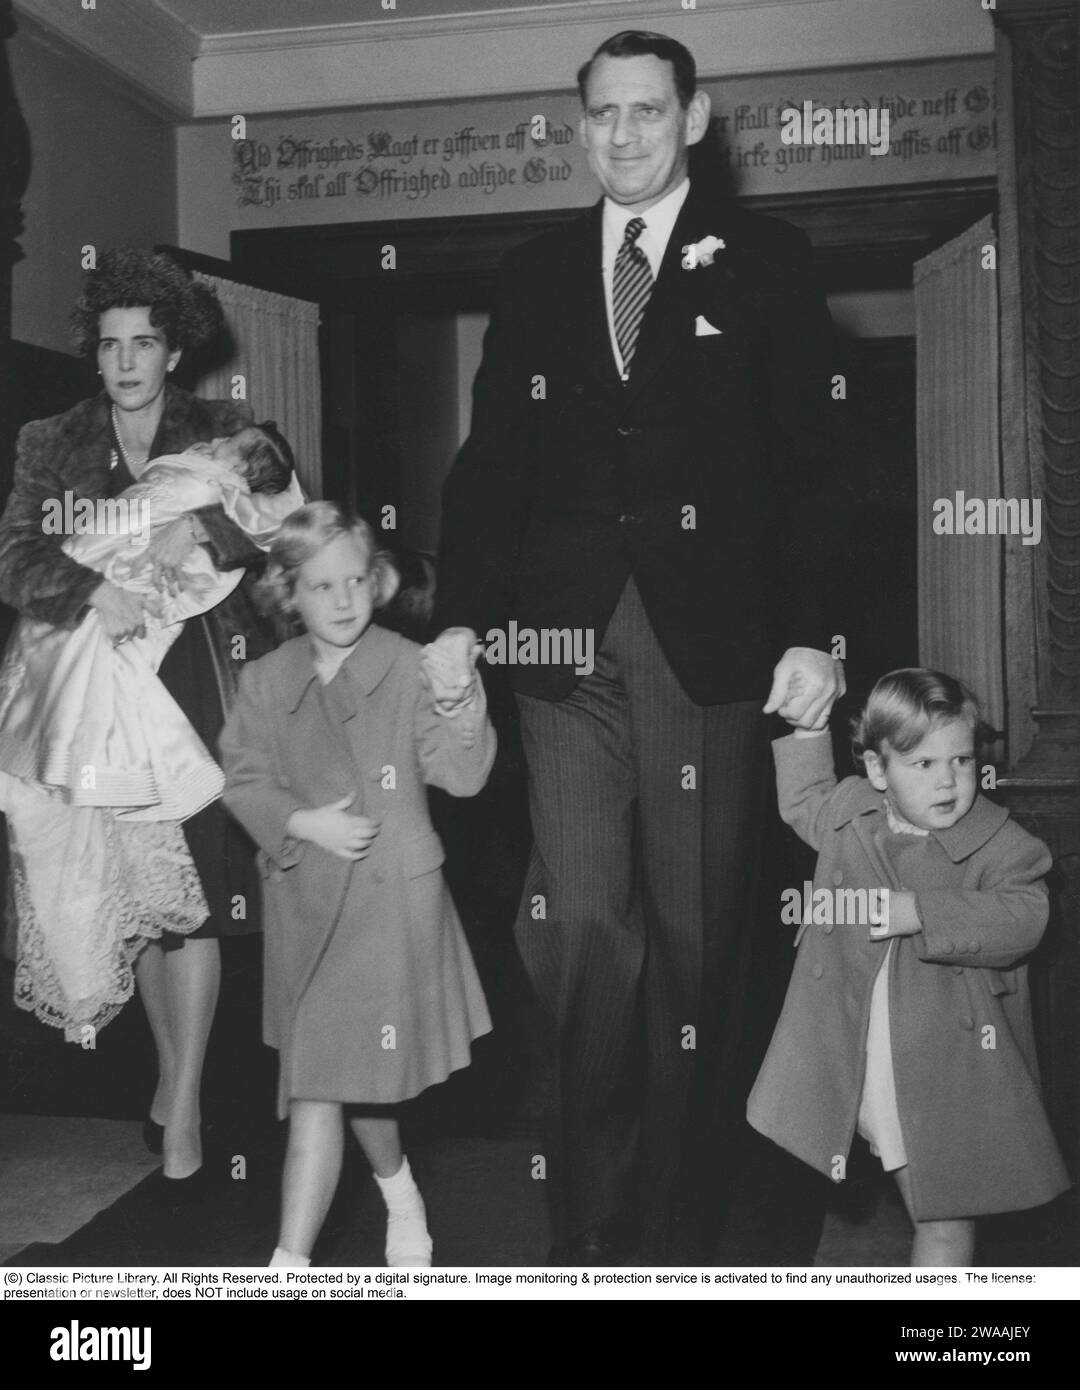 Königin Margrethe II. Von Dänemark. Das Bild zeigt ihren Vater König Friedrich IX. Von Denmarks Hand mit ihrer Schwester Benedikte. Königin Ingrid trägt ihre Tochter Ann-Marie aus der Holmen-Kirche, wo sie getauft wurde. 9. oktober 1946. Stockfoto